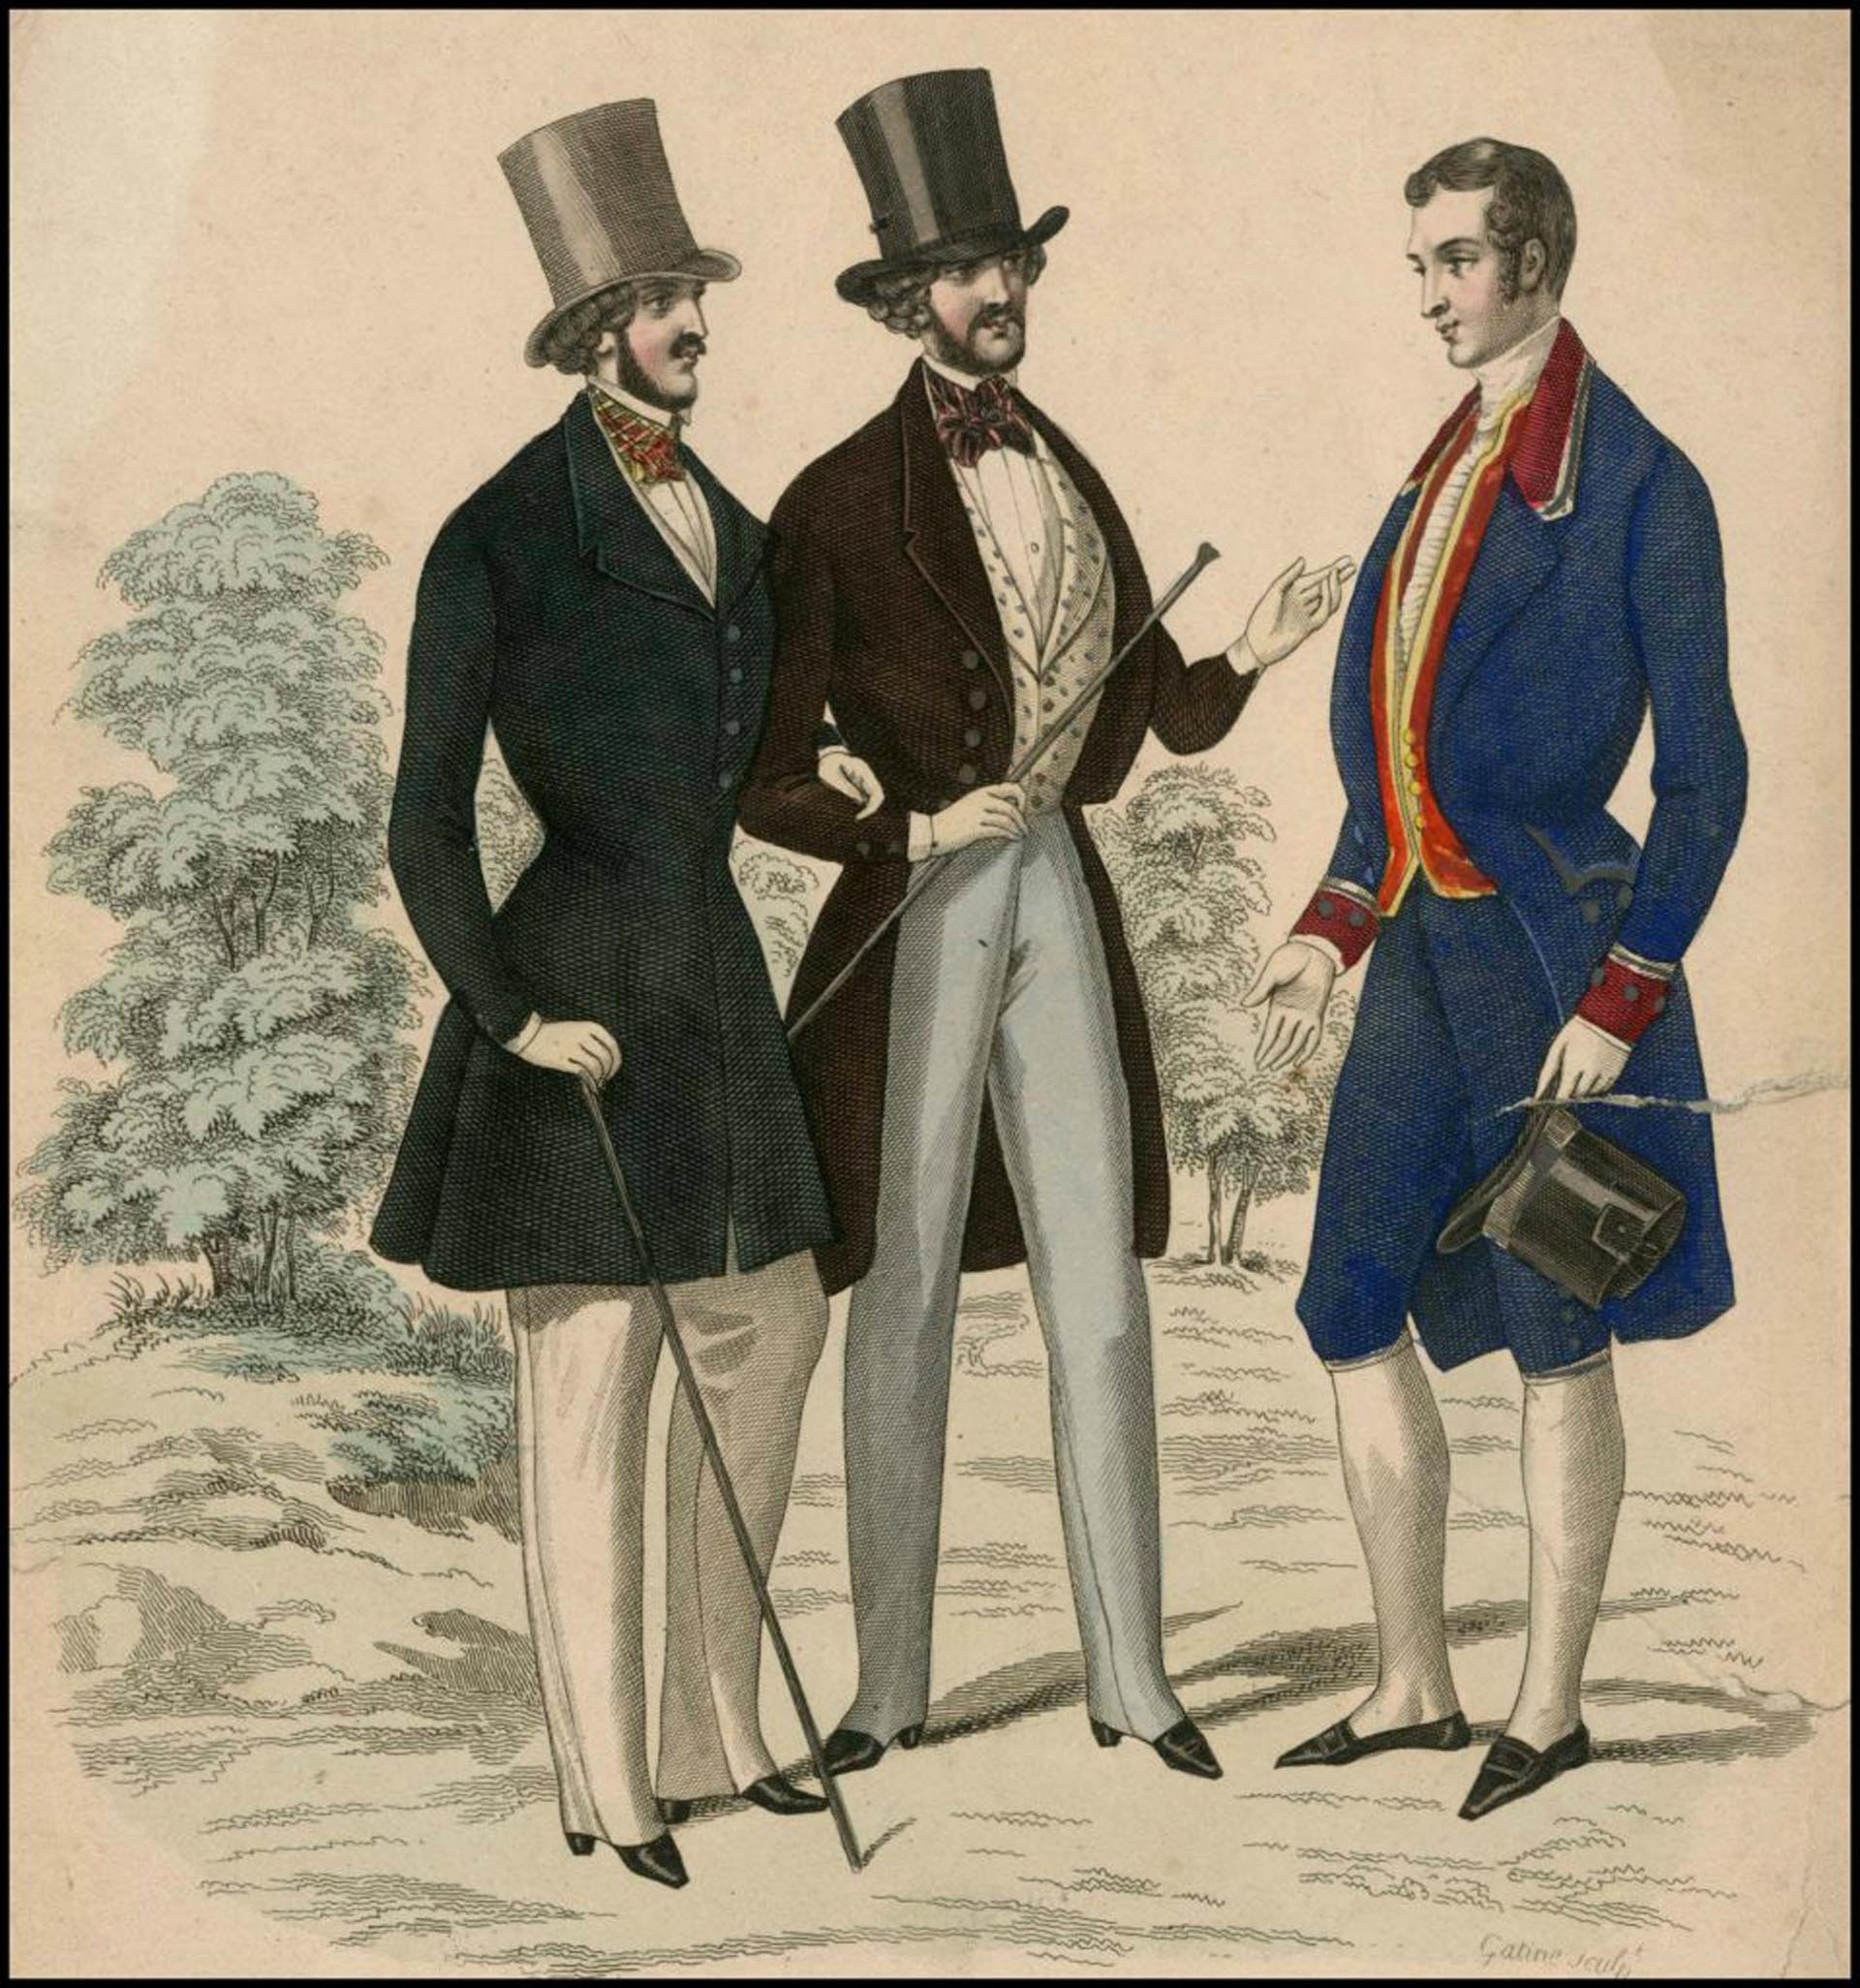 История одежды мужчин. Бидермейер 19 век мужская мода. Мужская мода 19 век Франция. Мода Франция 19 век мужчины. Мужская мода 19 века Романтизм.